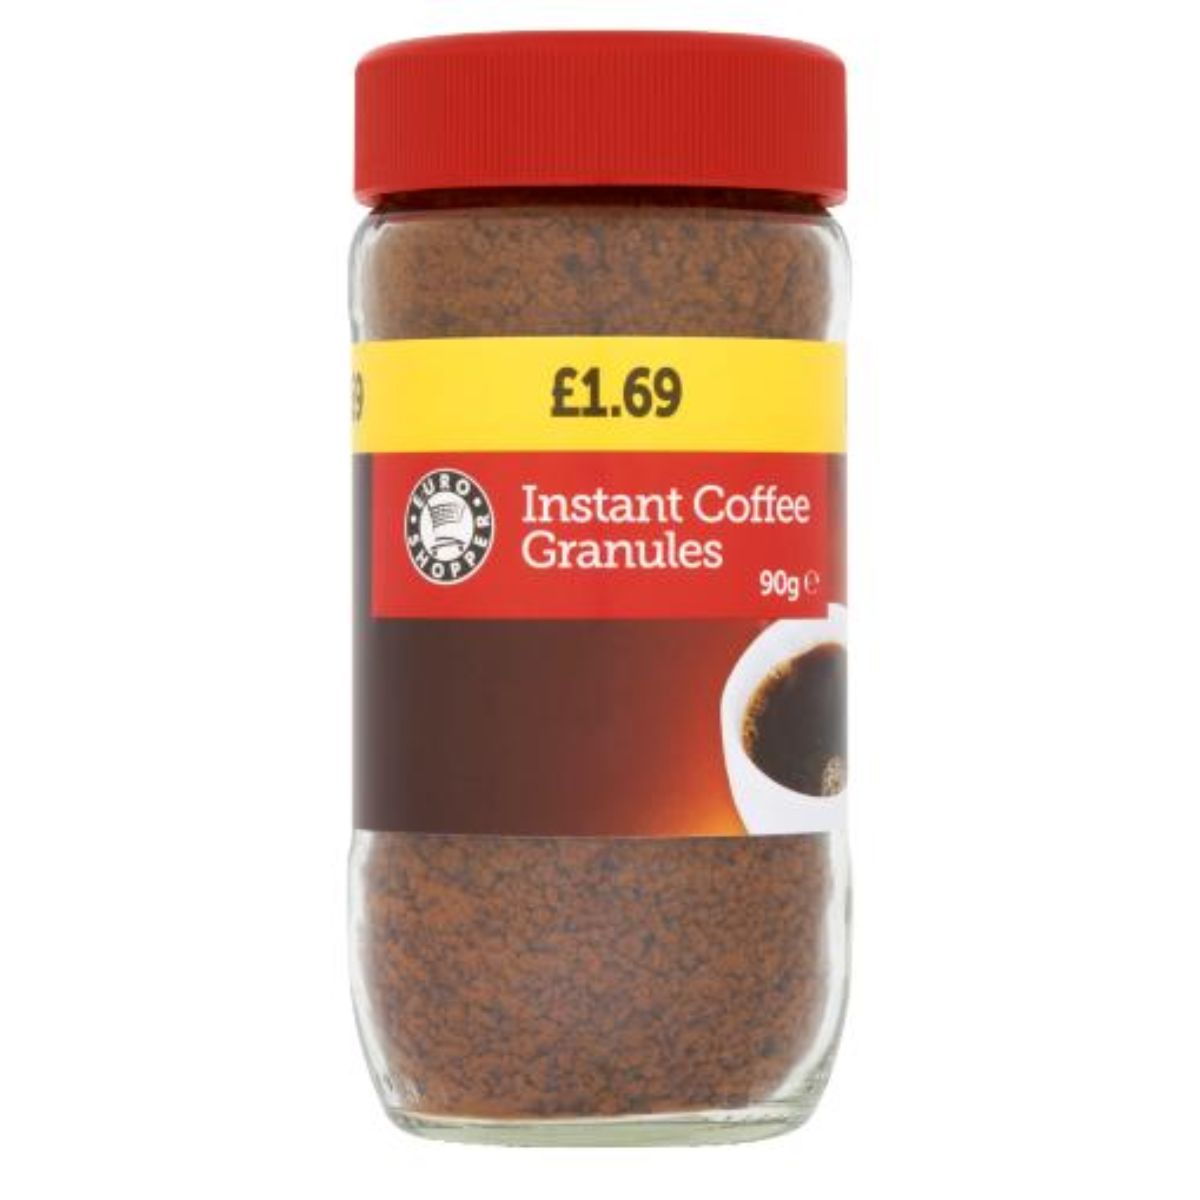 Euro Shopper - Instant Coffee Granules - 90g in a jar.